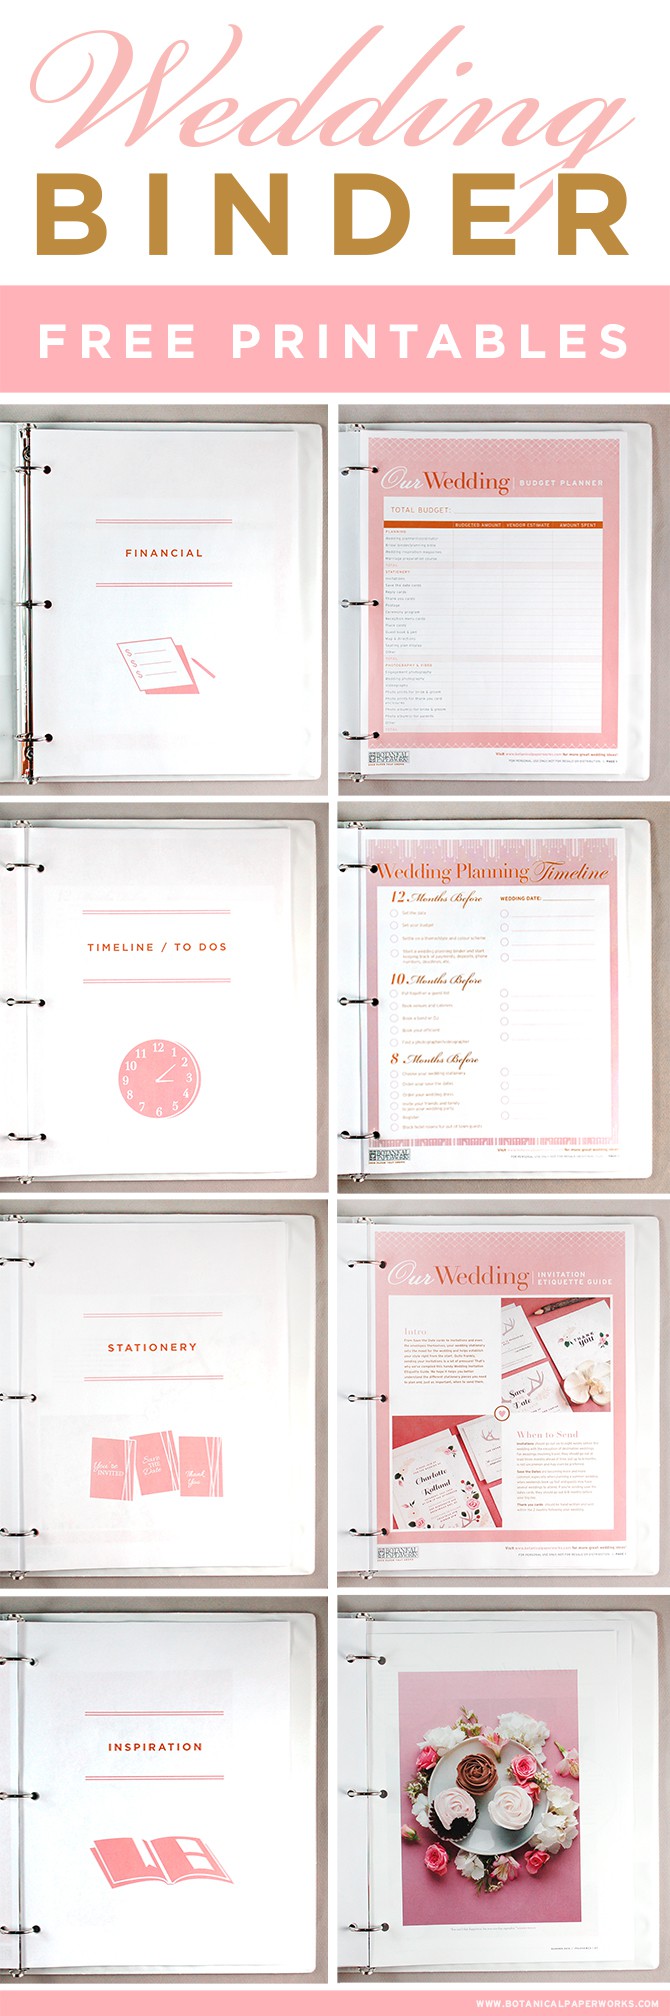 free printables wedding planning binder blog